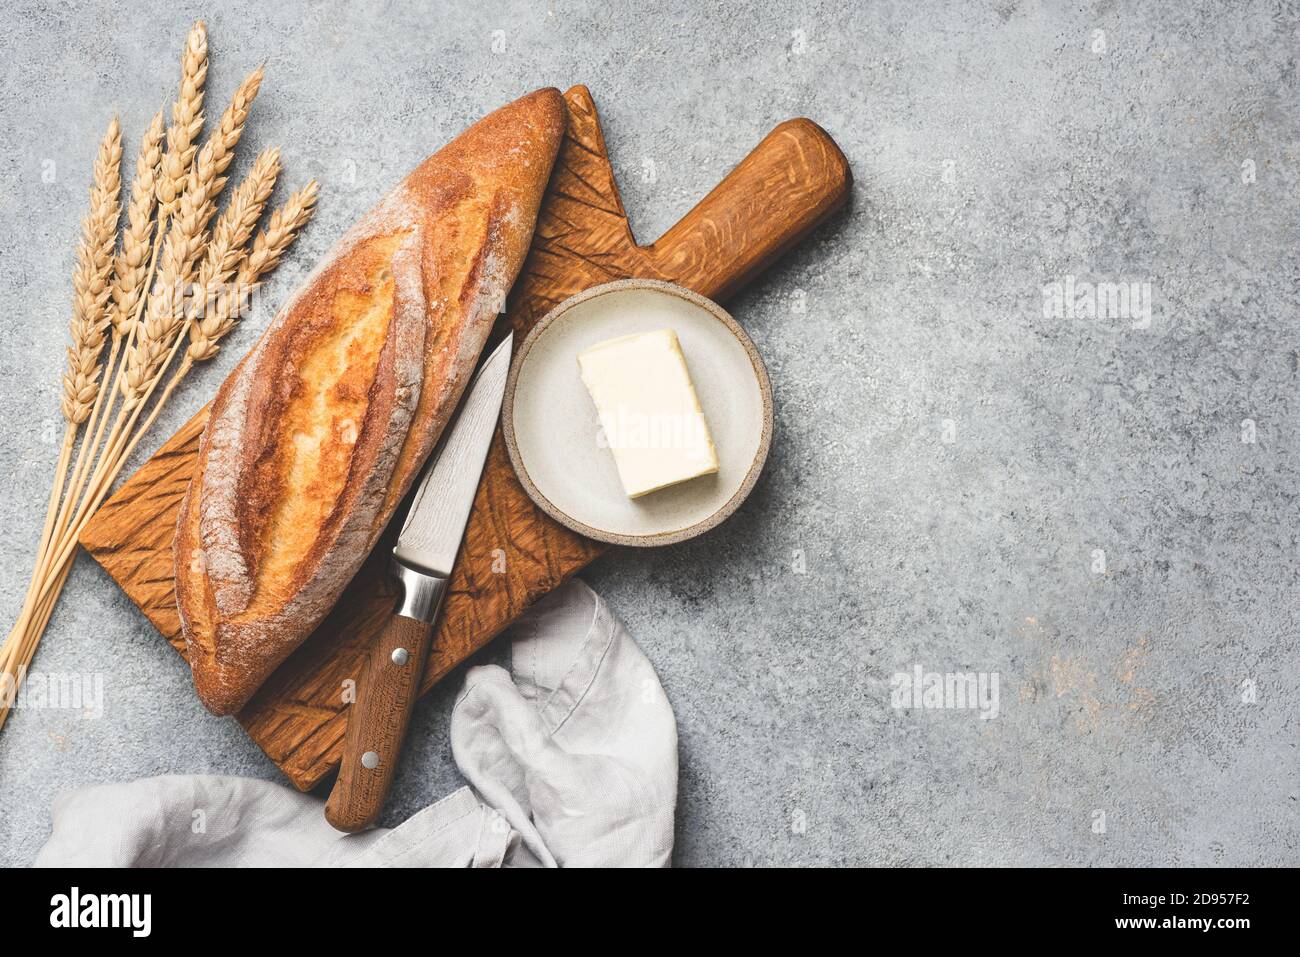 Pane fresco baguette e burro su fondo di cemento. Spazio di copia della vista superiore per il testo Foto Stock